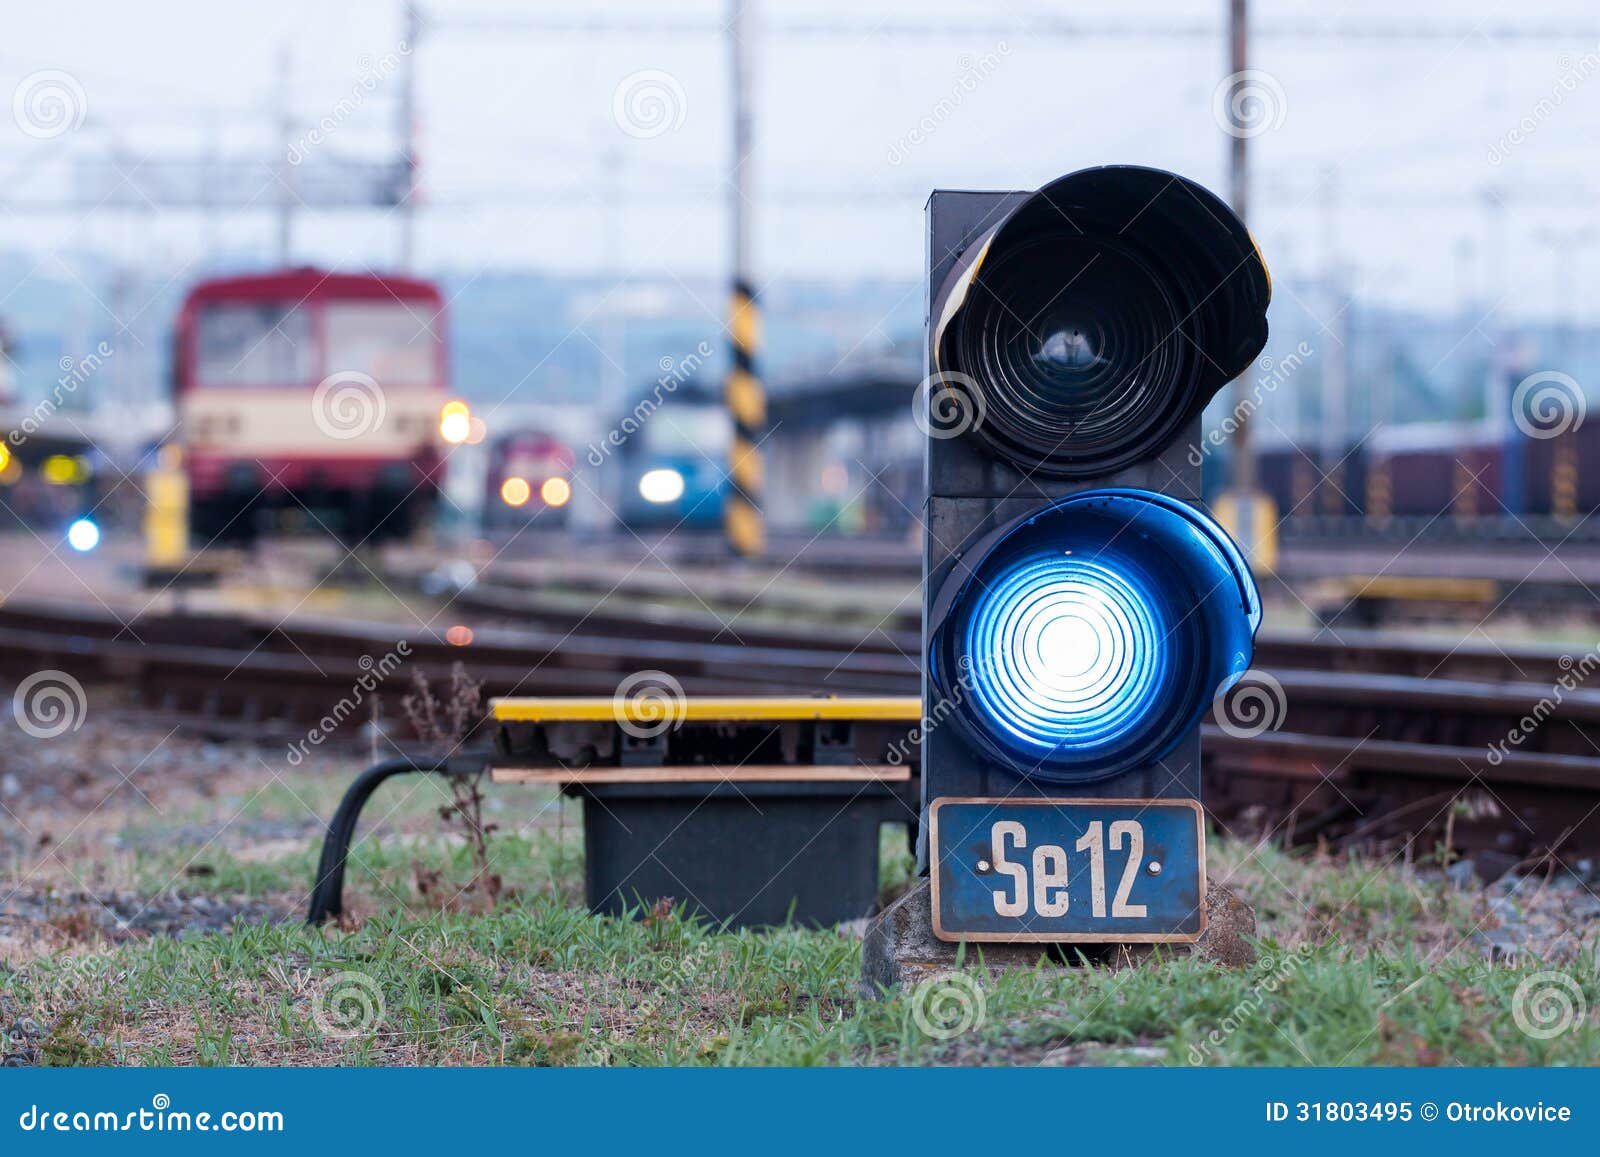 Белый сигнал жд. Маневровый светофор. Семафор железная дорога. Маневровые сигналы. Синий сигнал маневрового светофора.